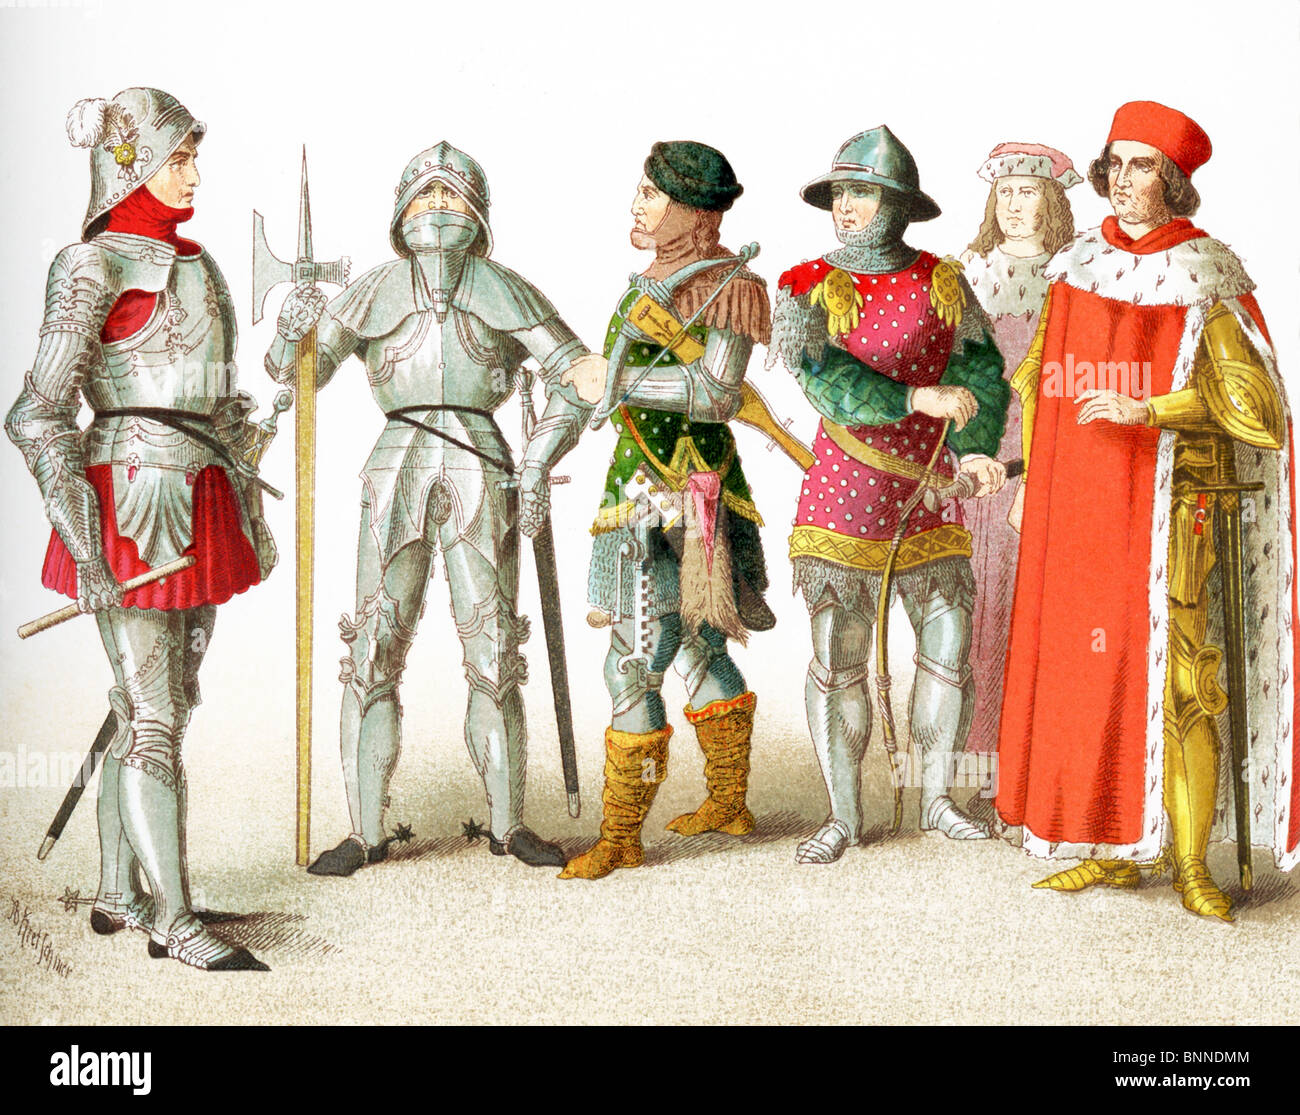 Les chiffres sont Allemands entre A.D. 1450-1500 deux chevaliers, un guerrier avec une arbalète, un archer, et de deux électeurs. Banque D'Images